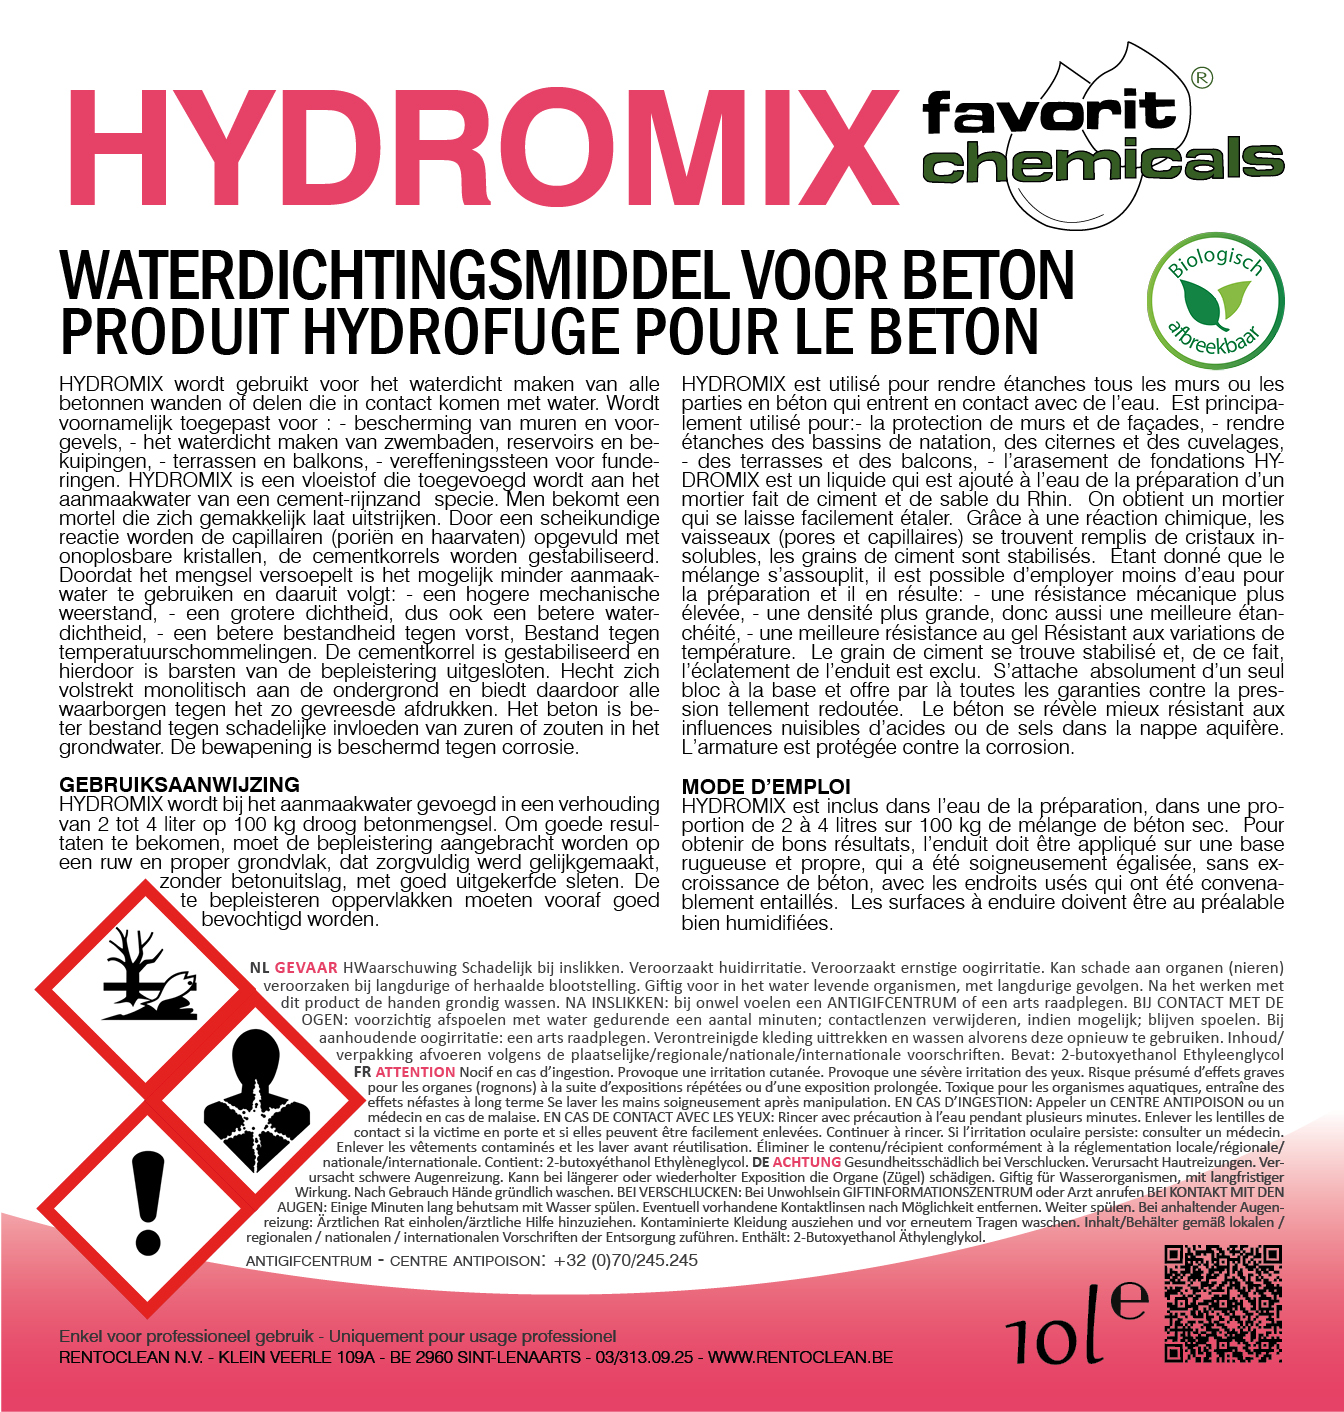 Hydromix waterdichtingsmiddel